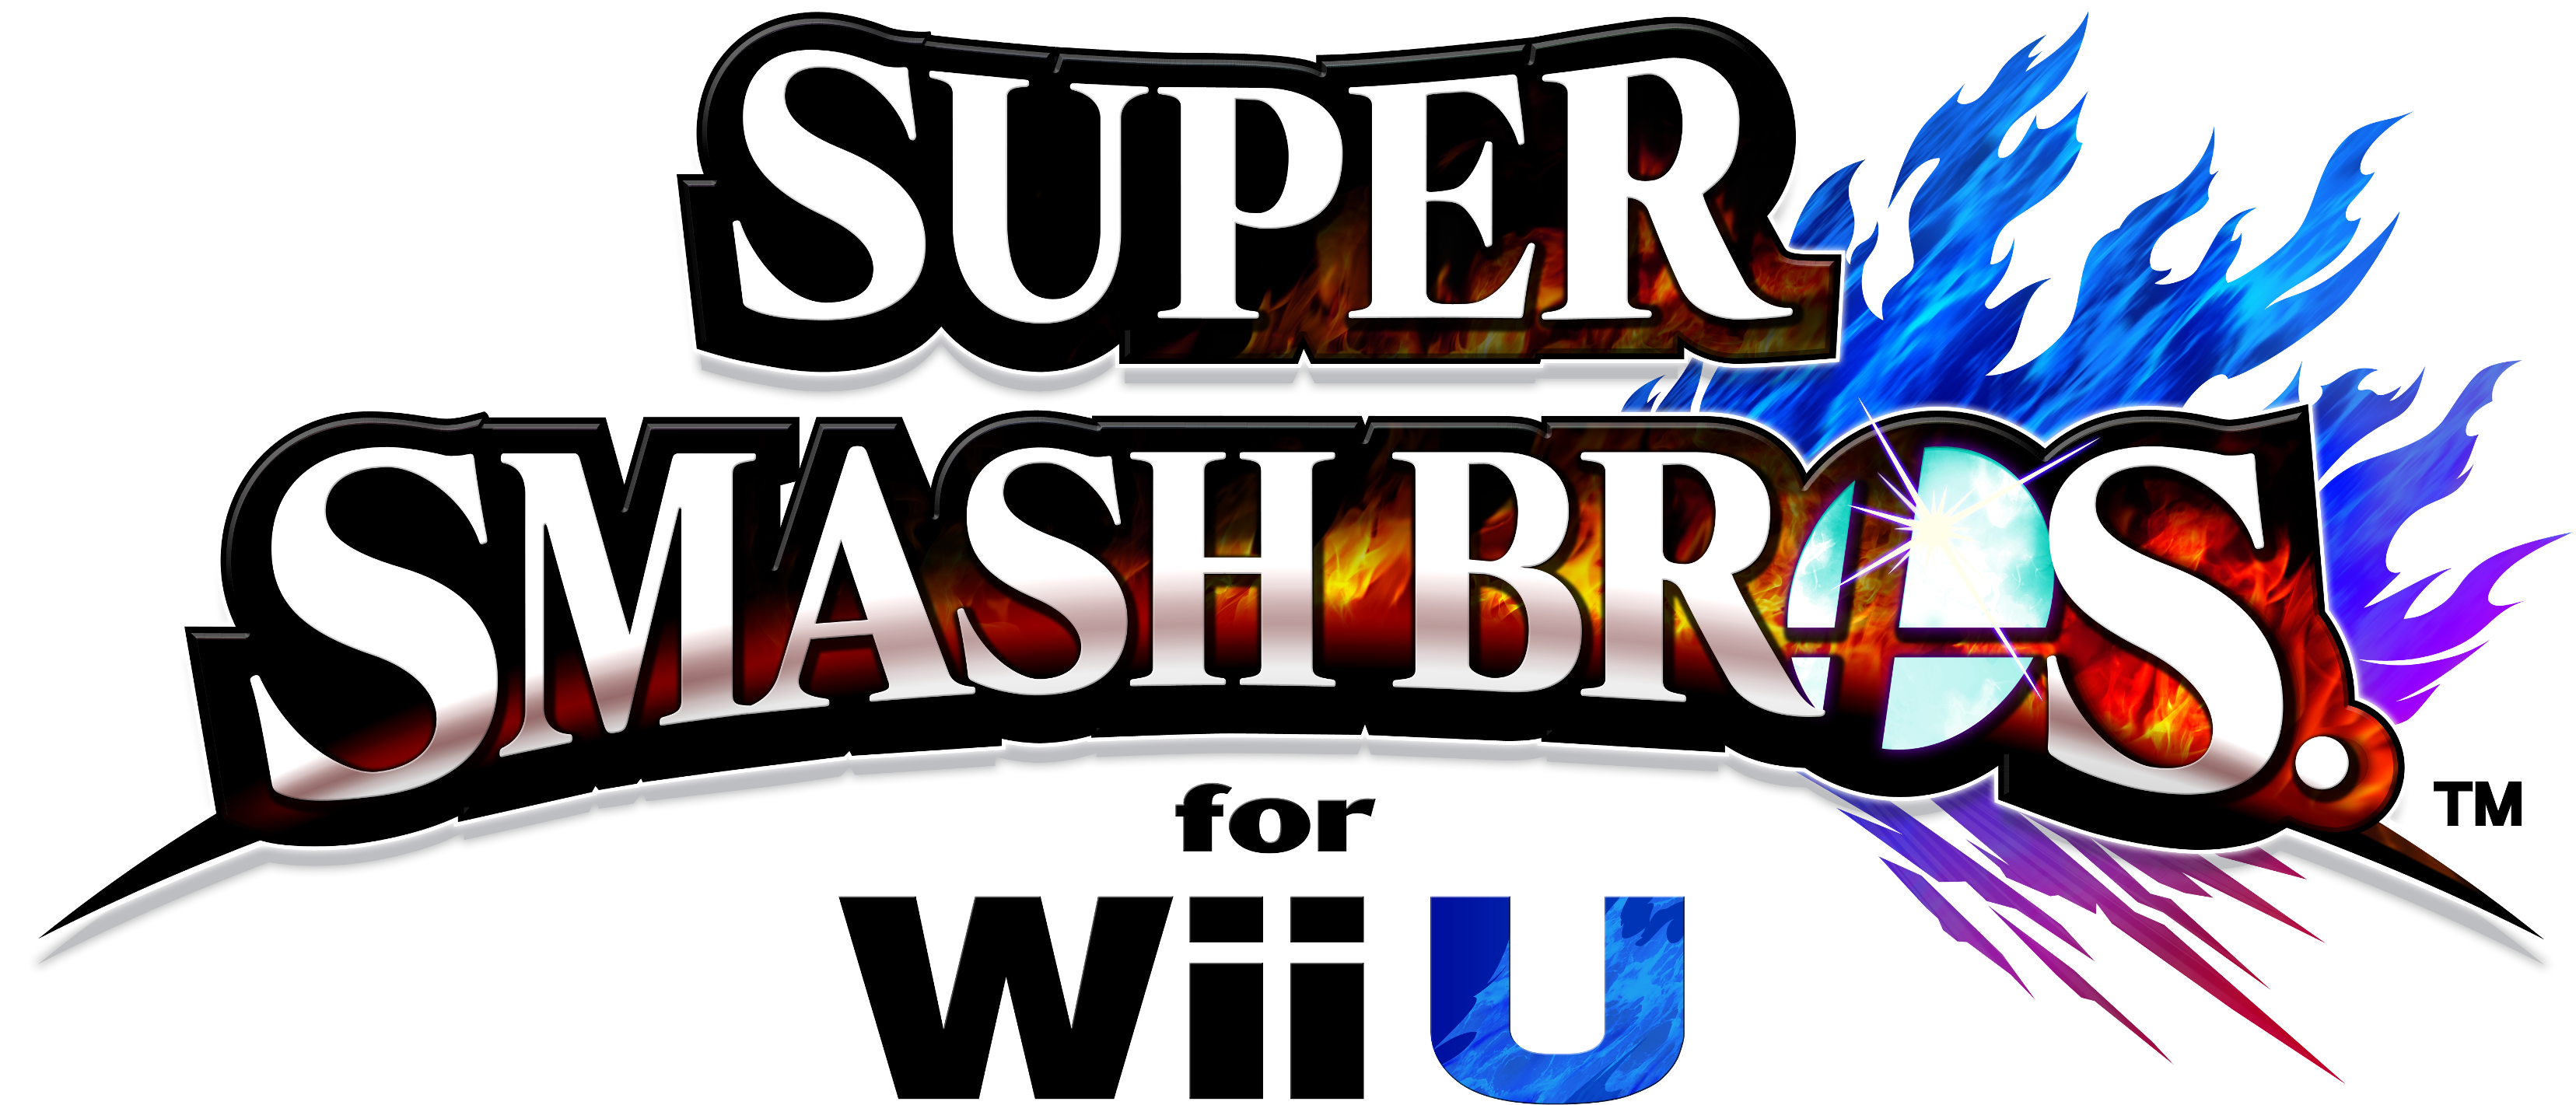 Super Smash Bros. Logo PNG Gambar Gratis